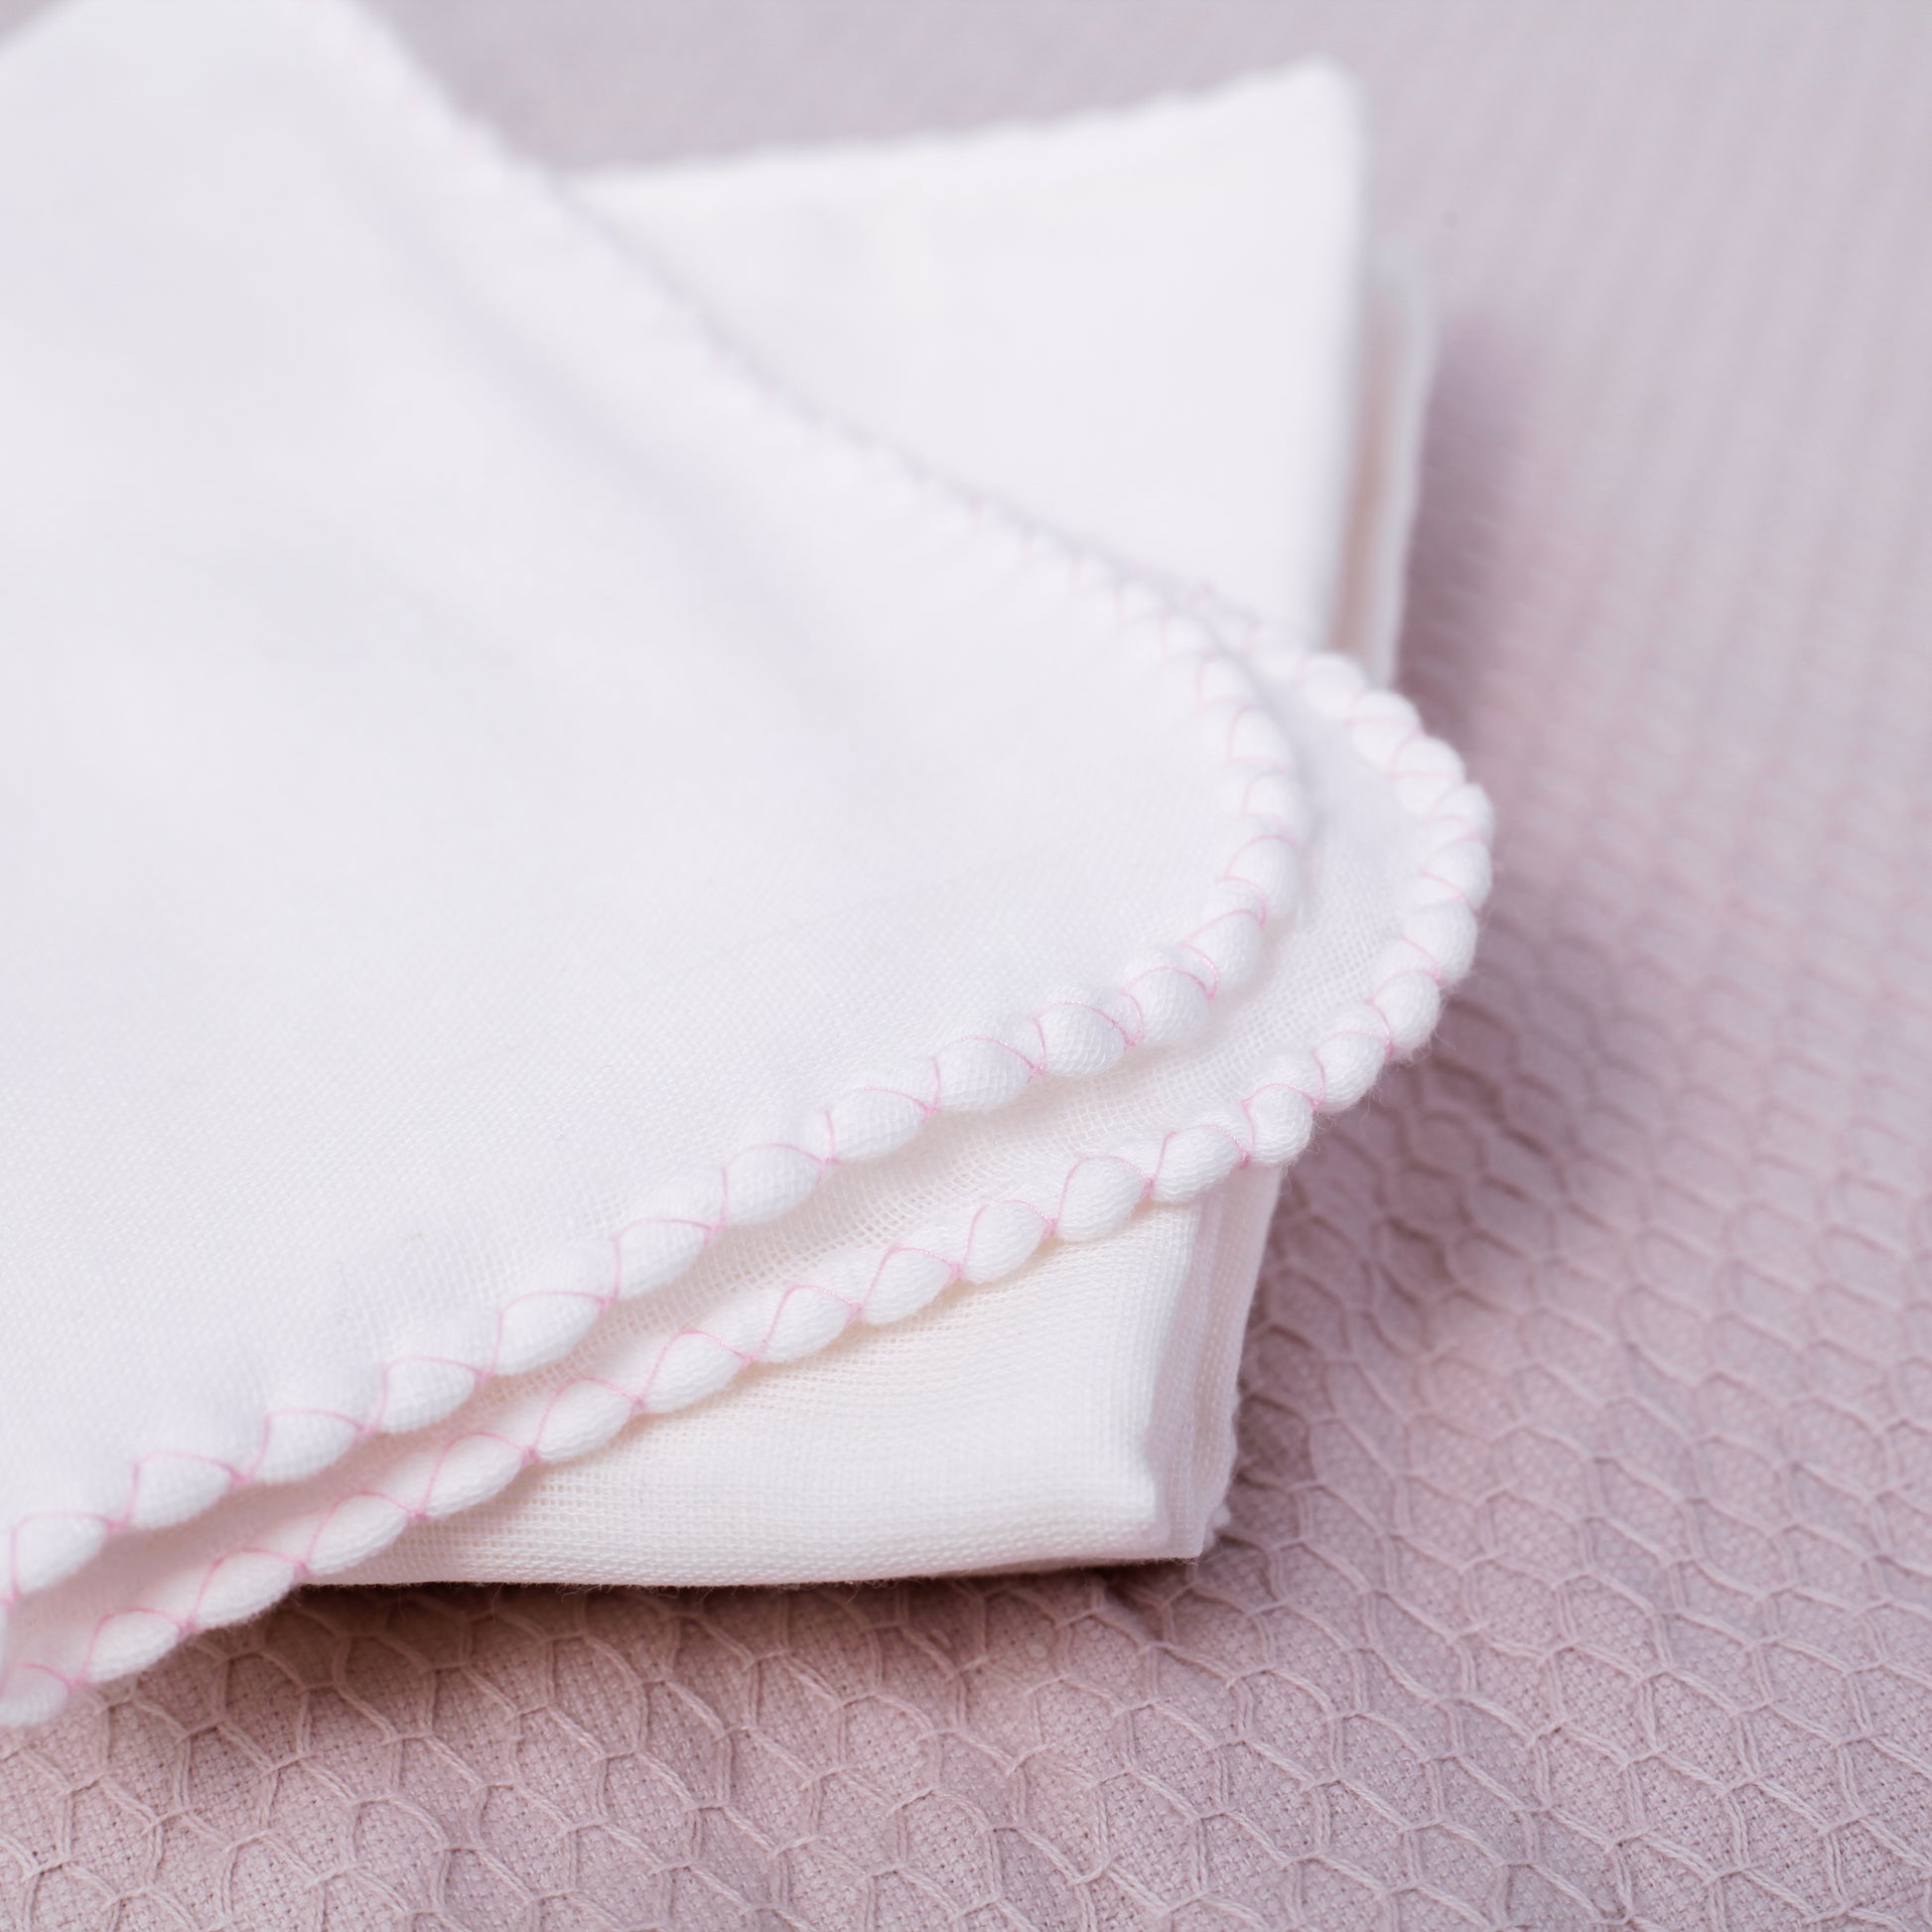 Suzuran Baby Gauze Handkerchief 5 pcs | Little Baby.